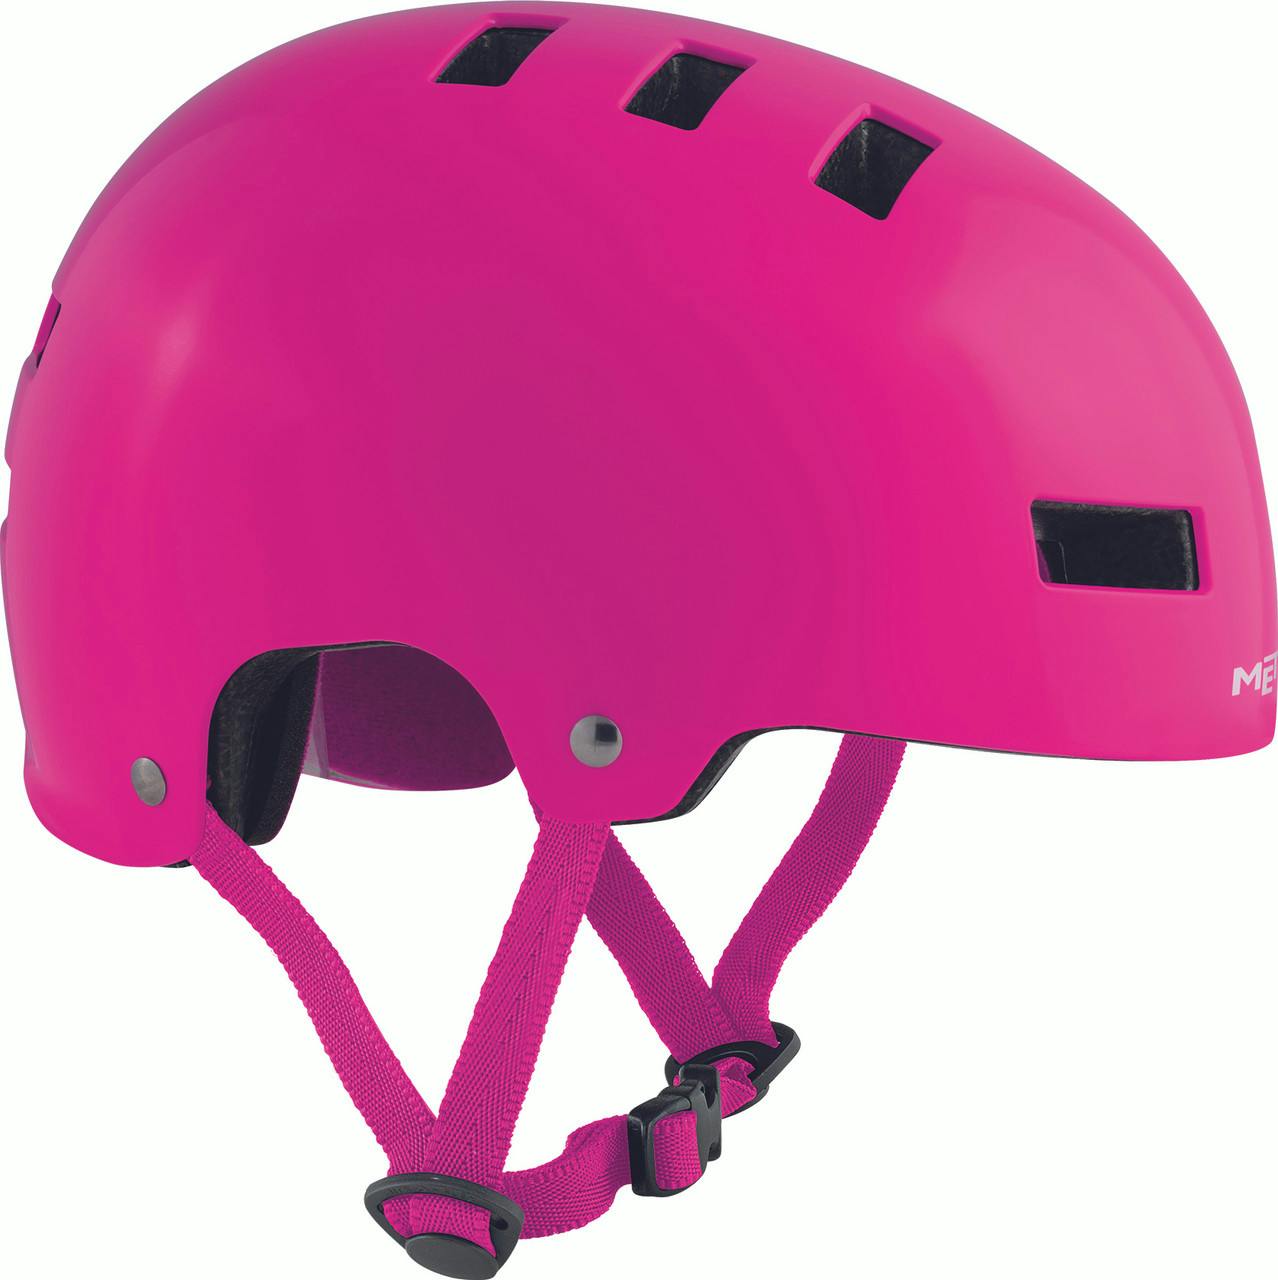 Yo-Yo Helmet Pink